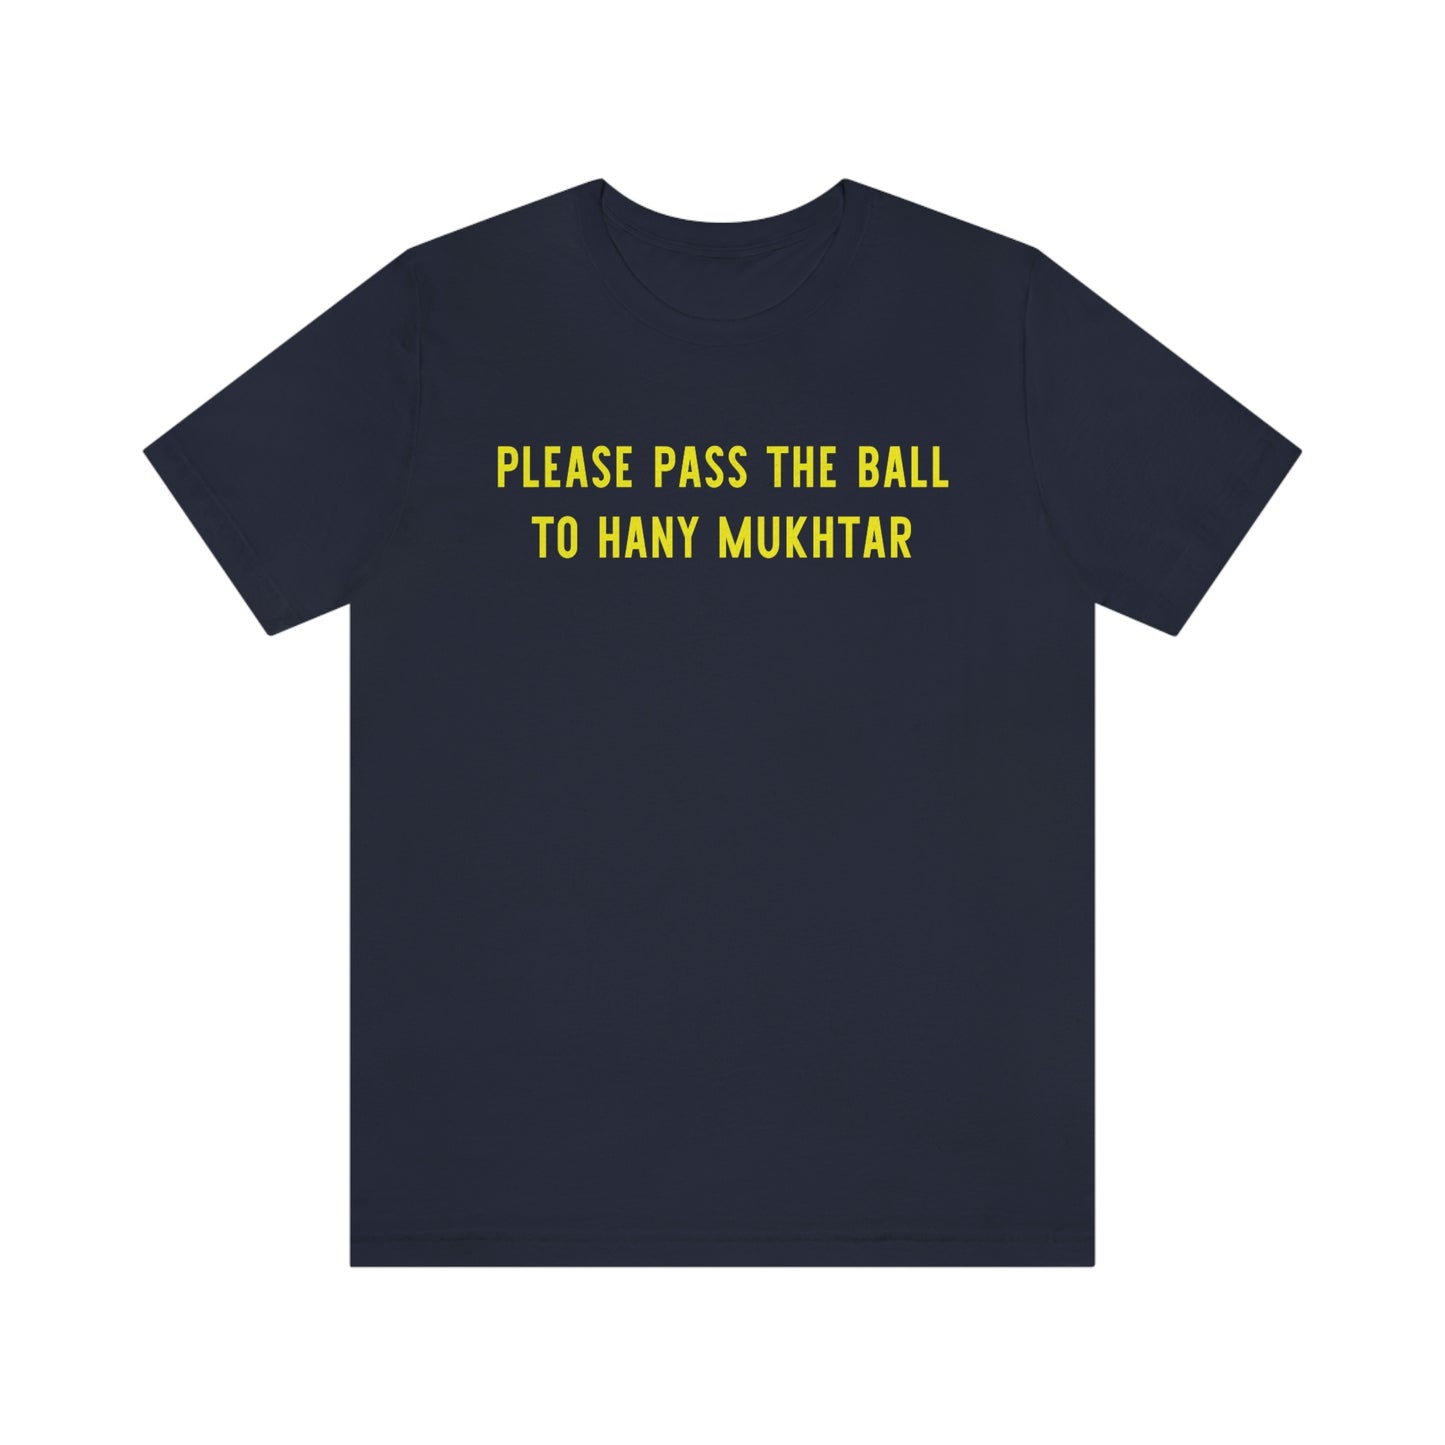 Pass the ball